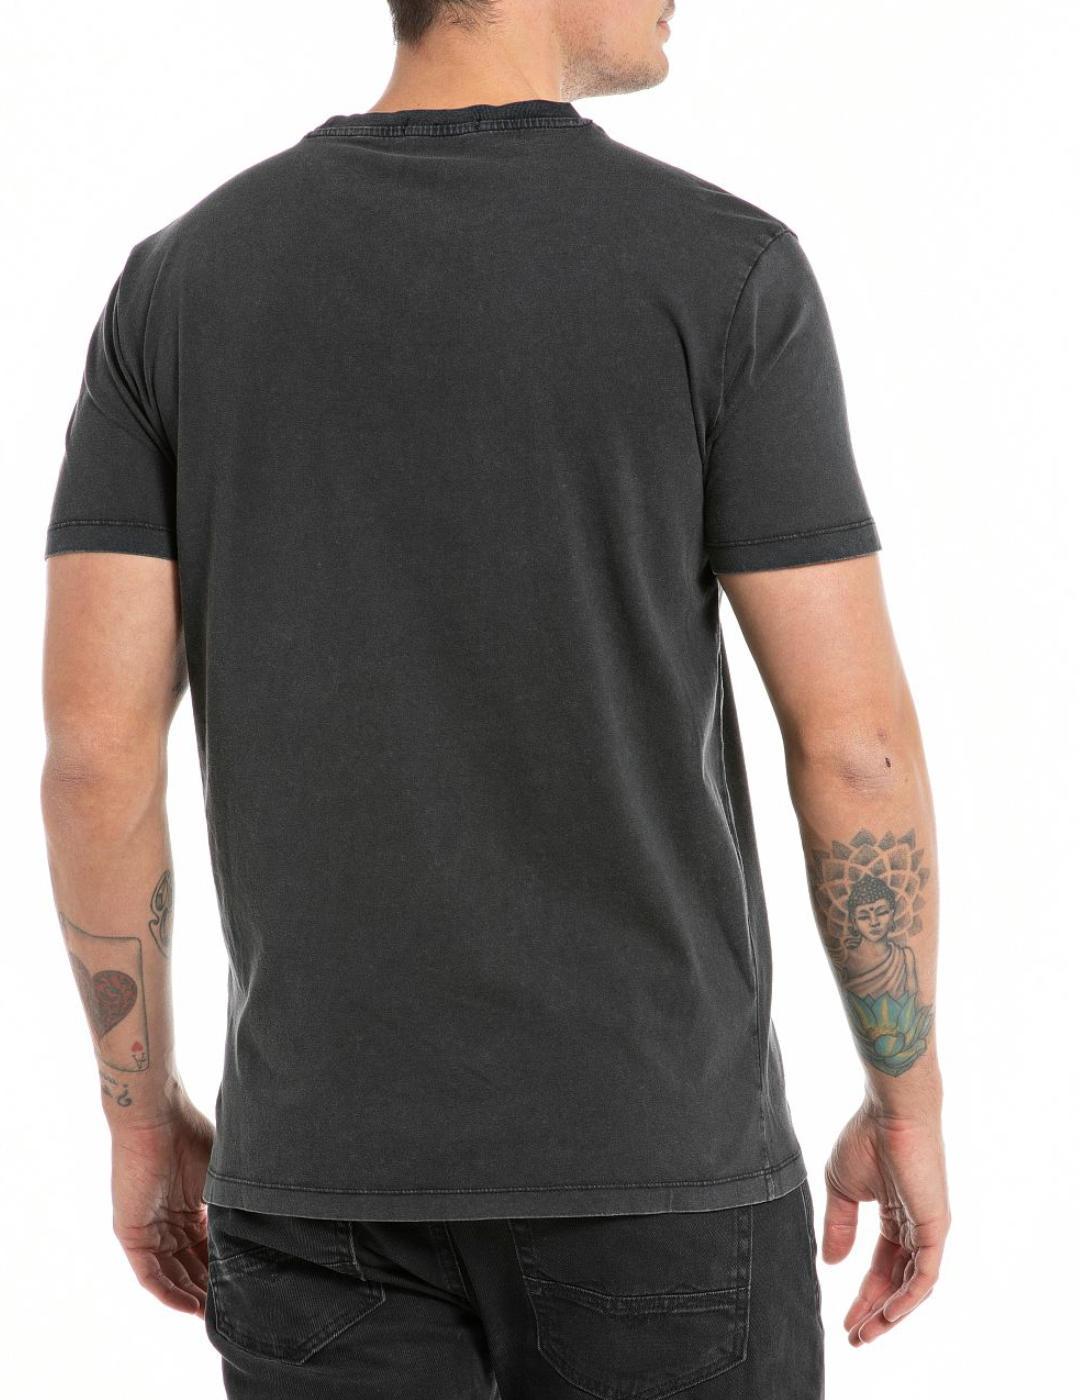 Camiseta Replay color negro estampado calavera para hombre